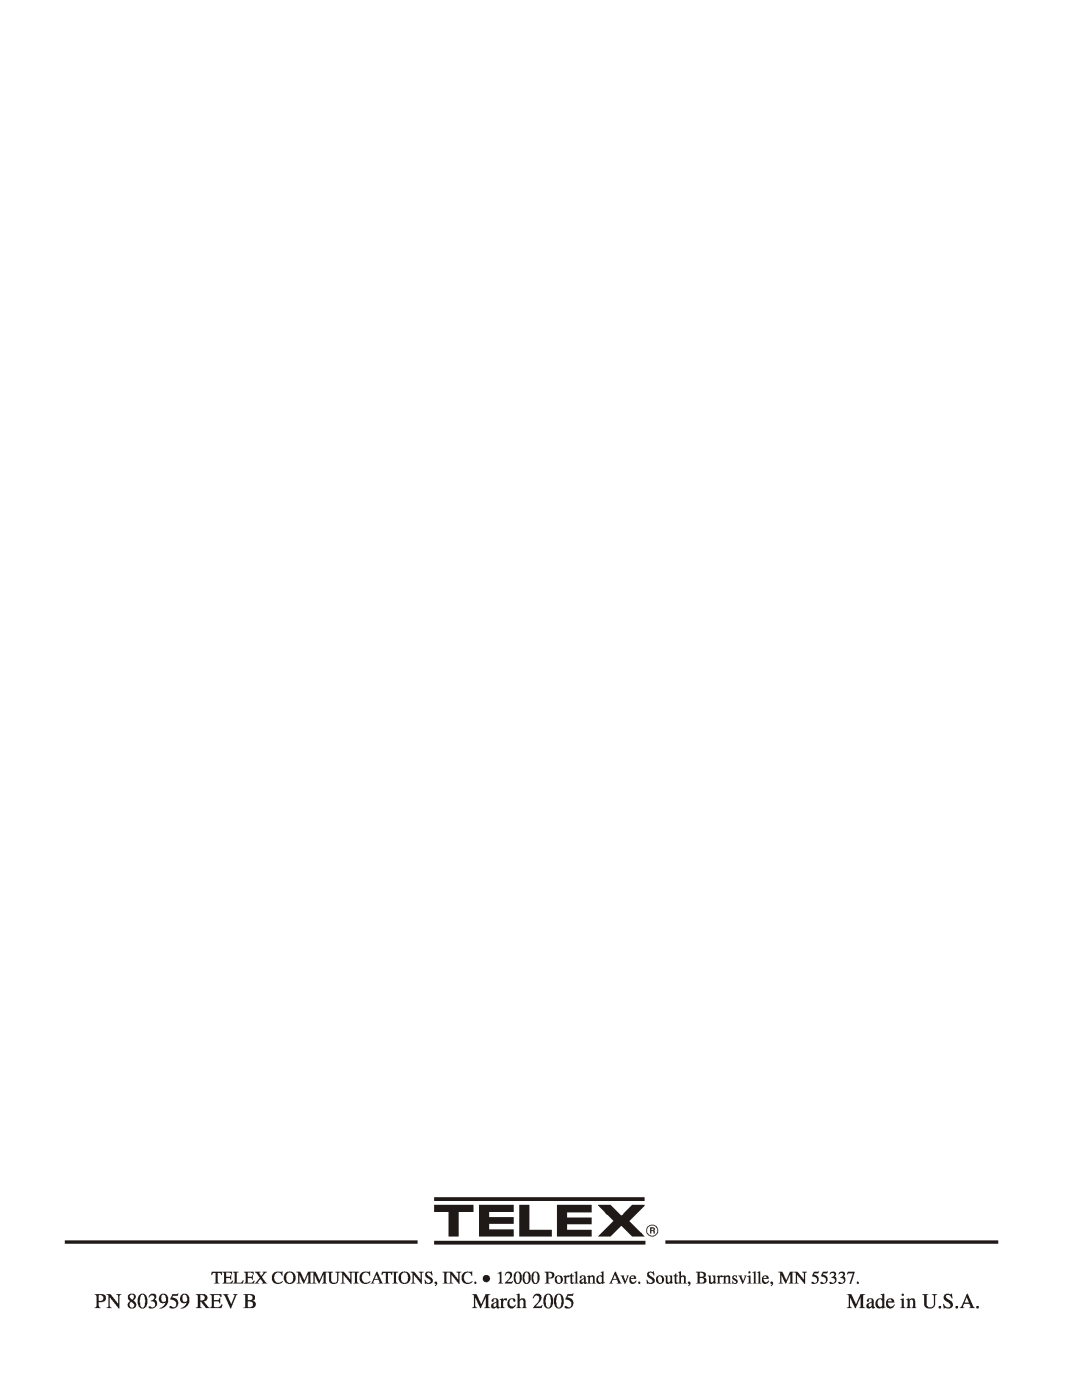 Telex TR-1 PN 803959 REV B, March, Made in U.S.A, TELEX COMMUNICATIONS, INC. 12000 Portland Ave. South, Burnsville, MN 